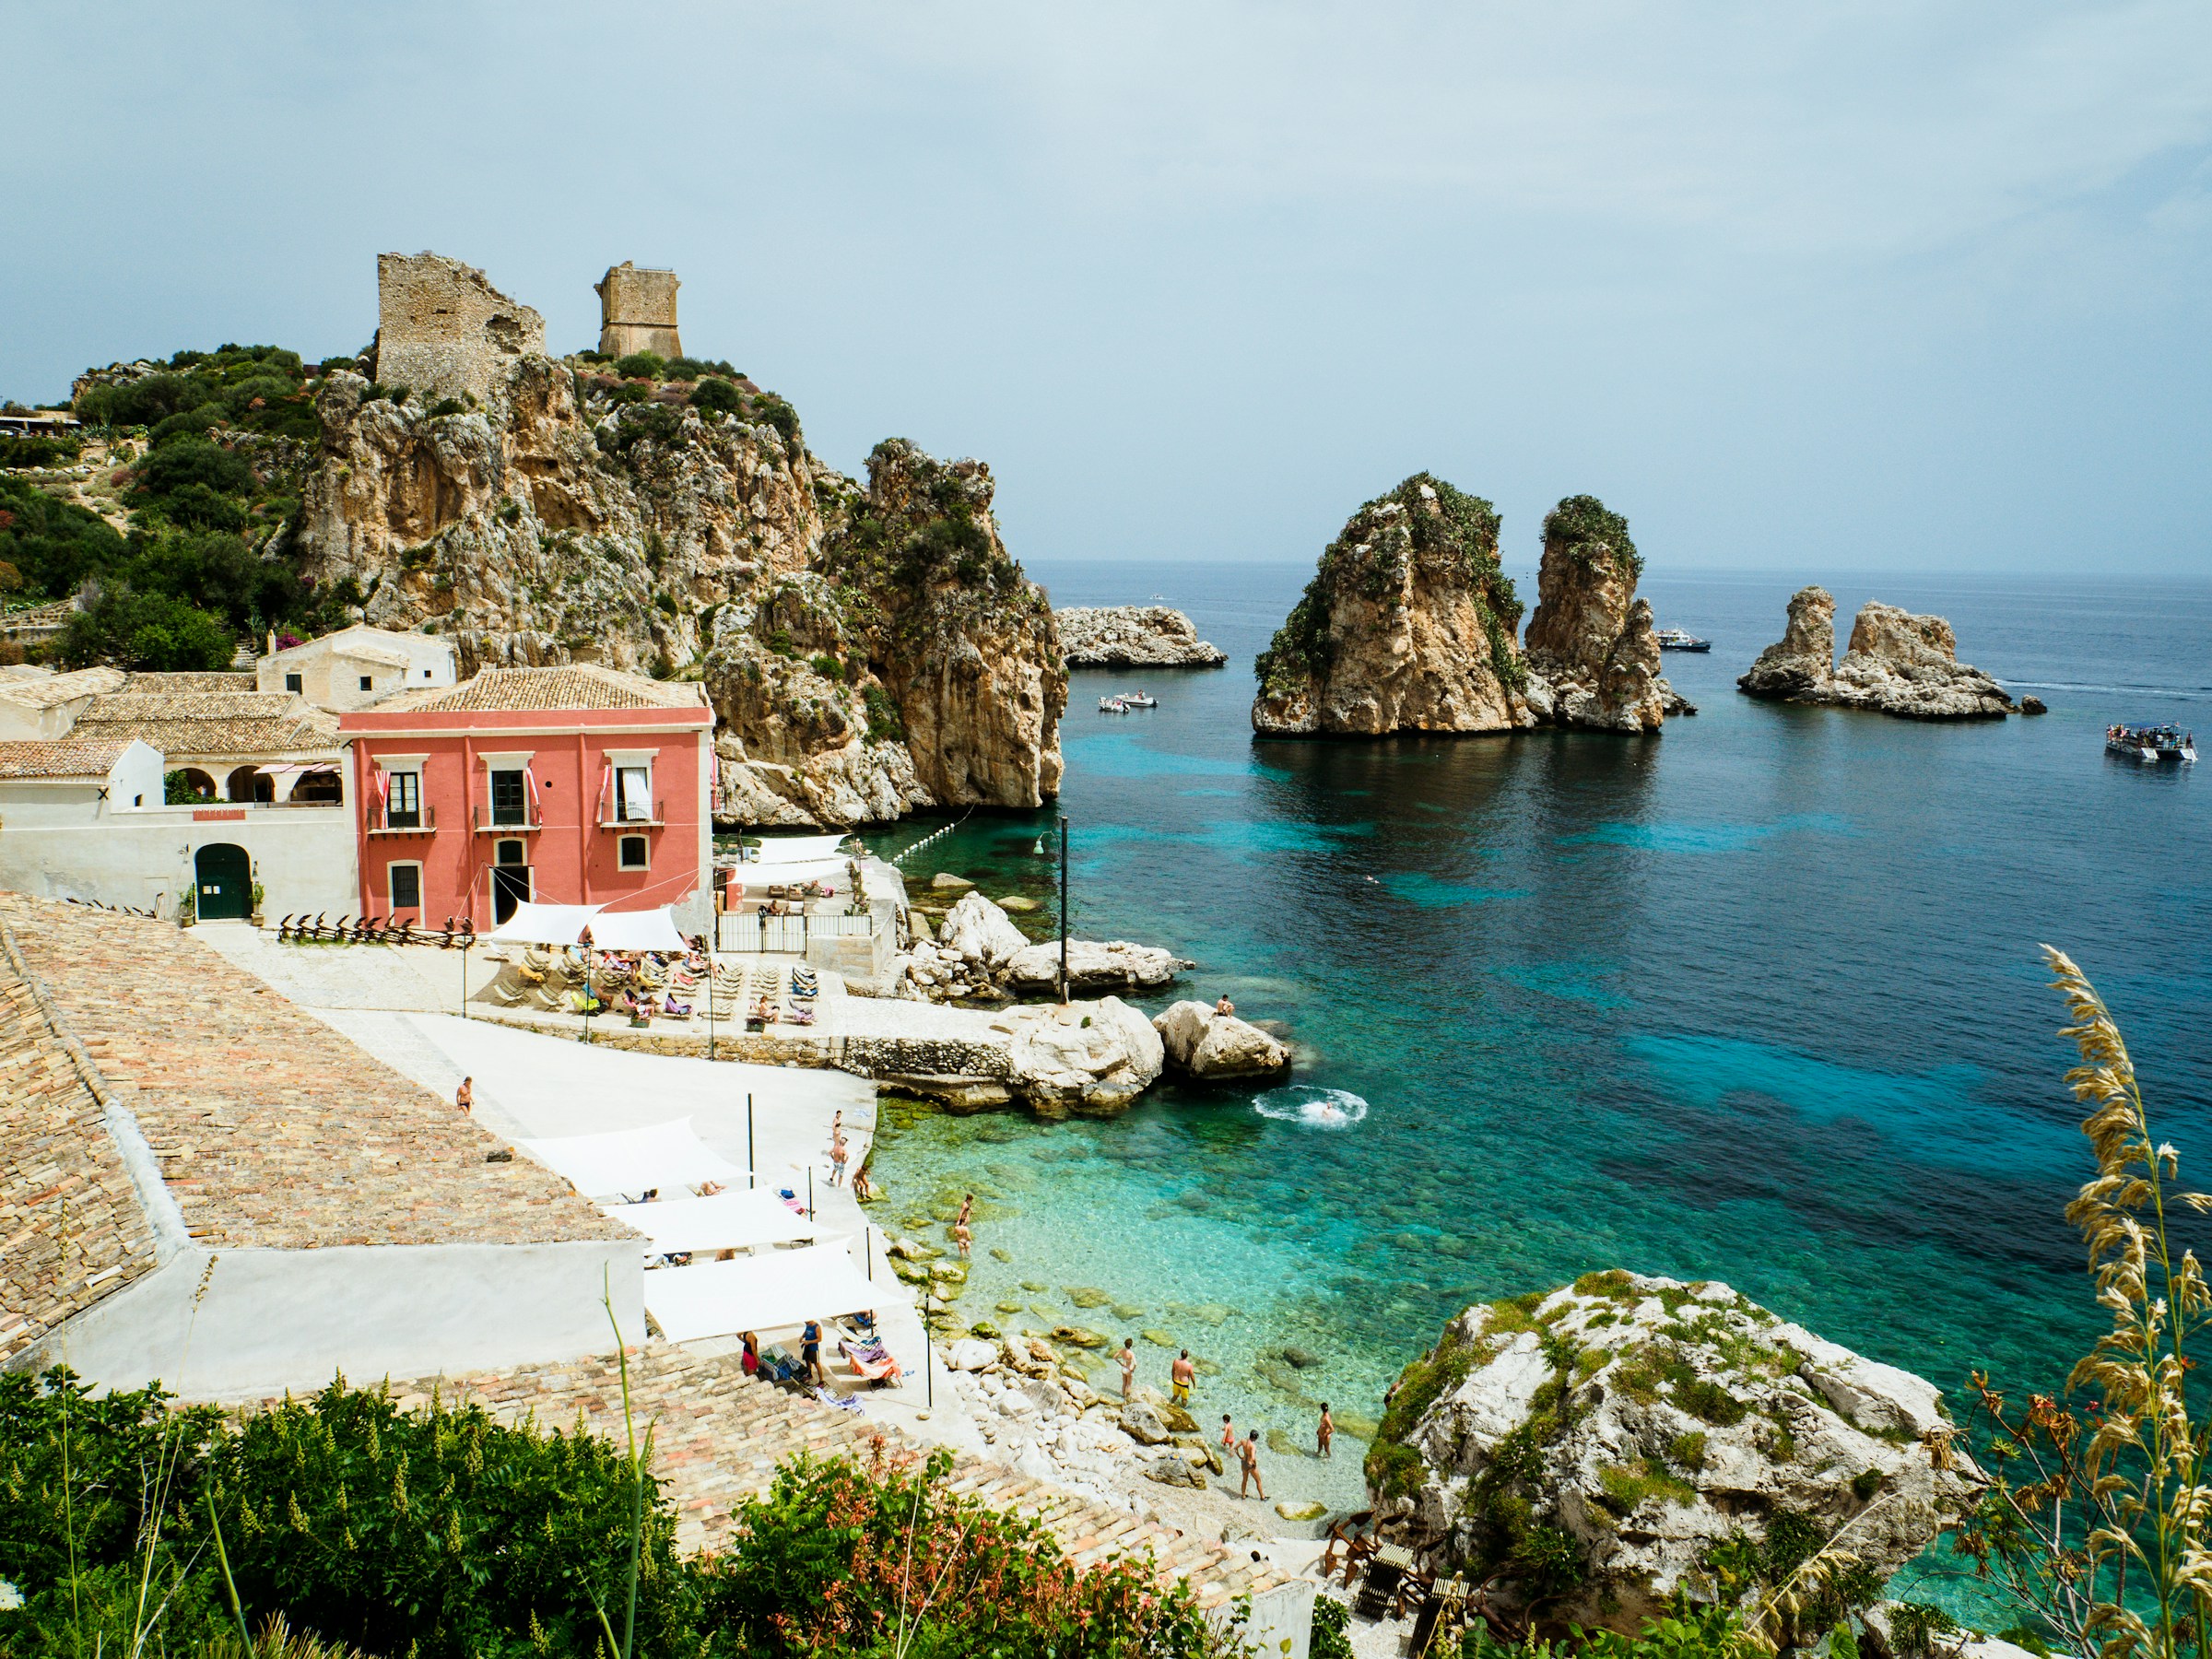 Idyllisk medelhavsutsikt med klippor, ett gammalt vakttorn, kristallklart vatten och en röd byggnad vid kusten av Sicilien.